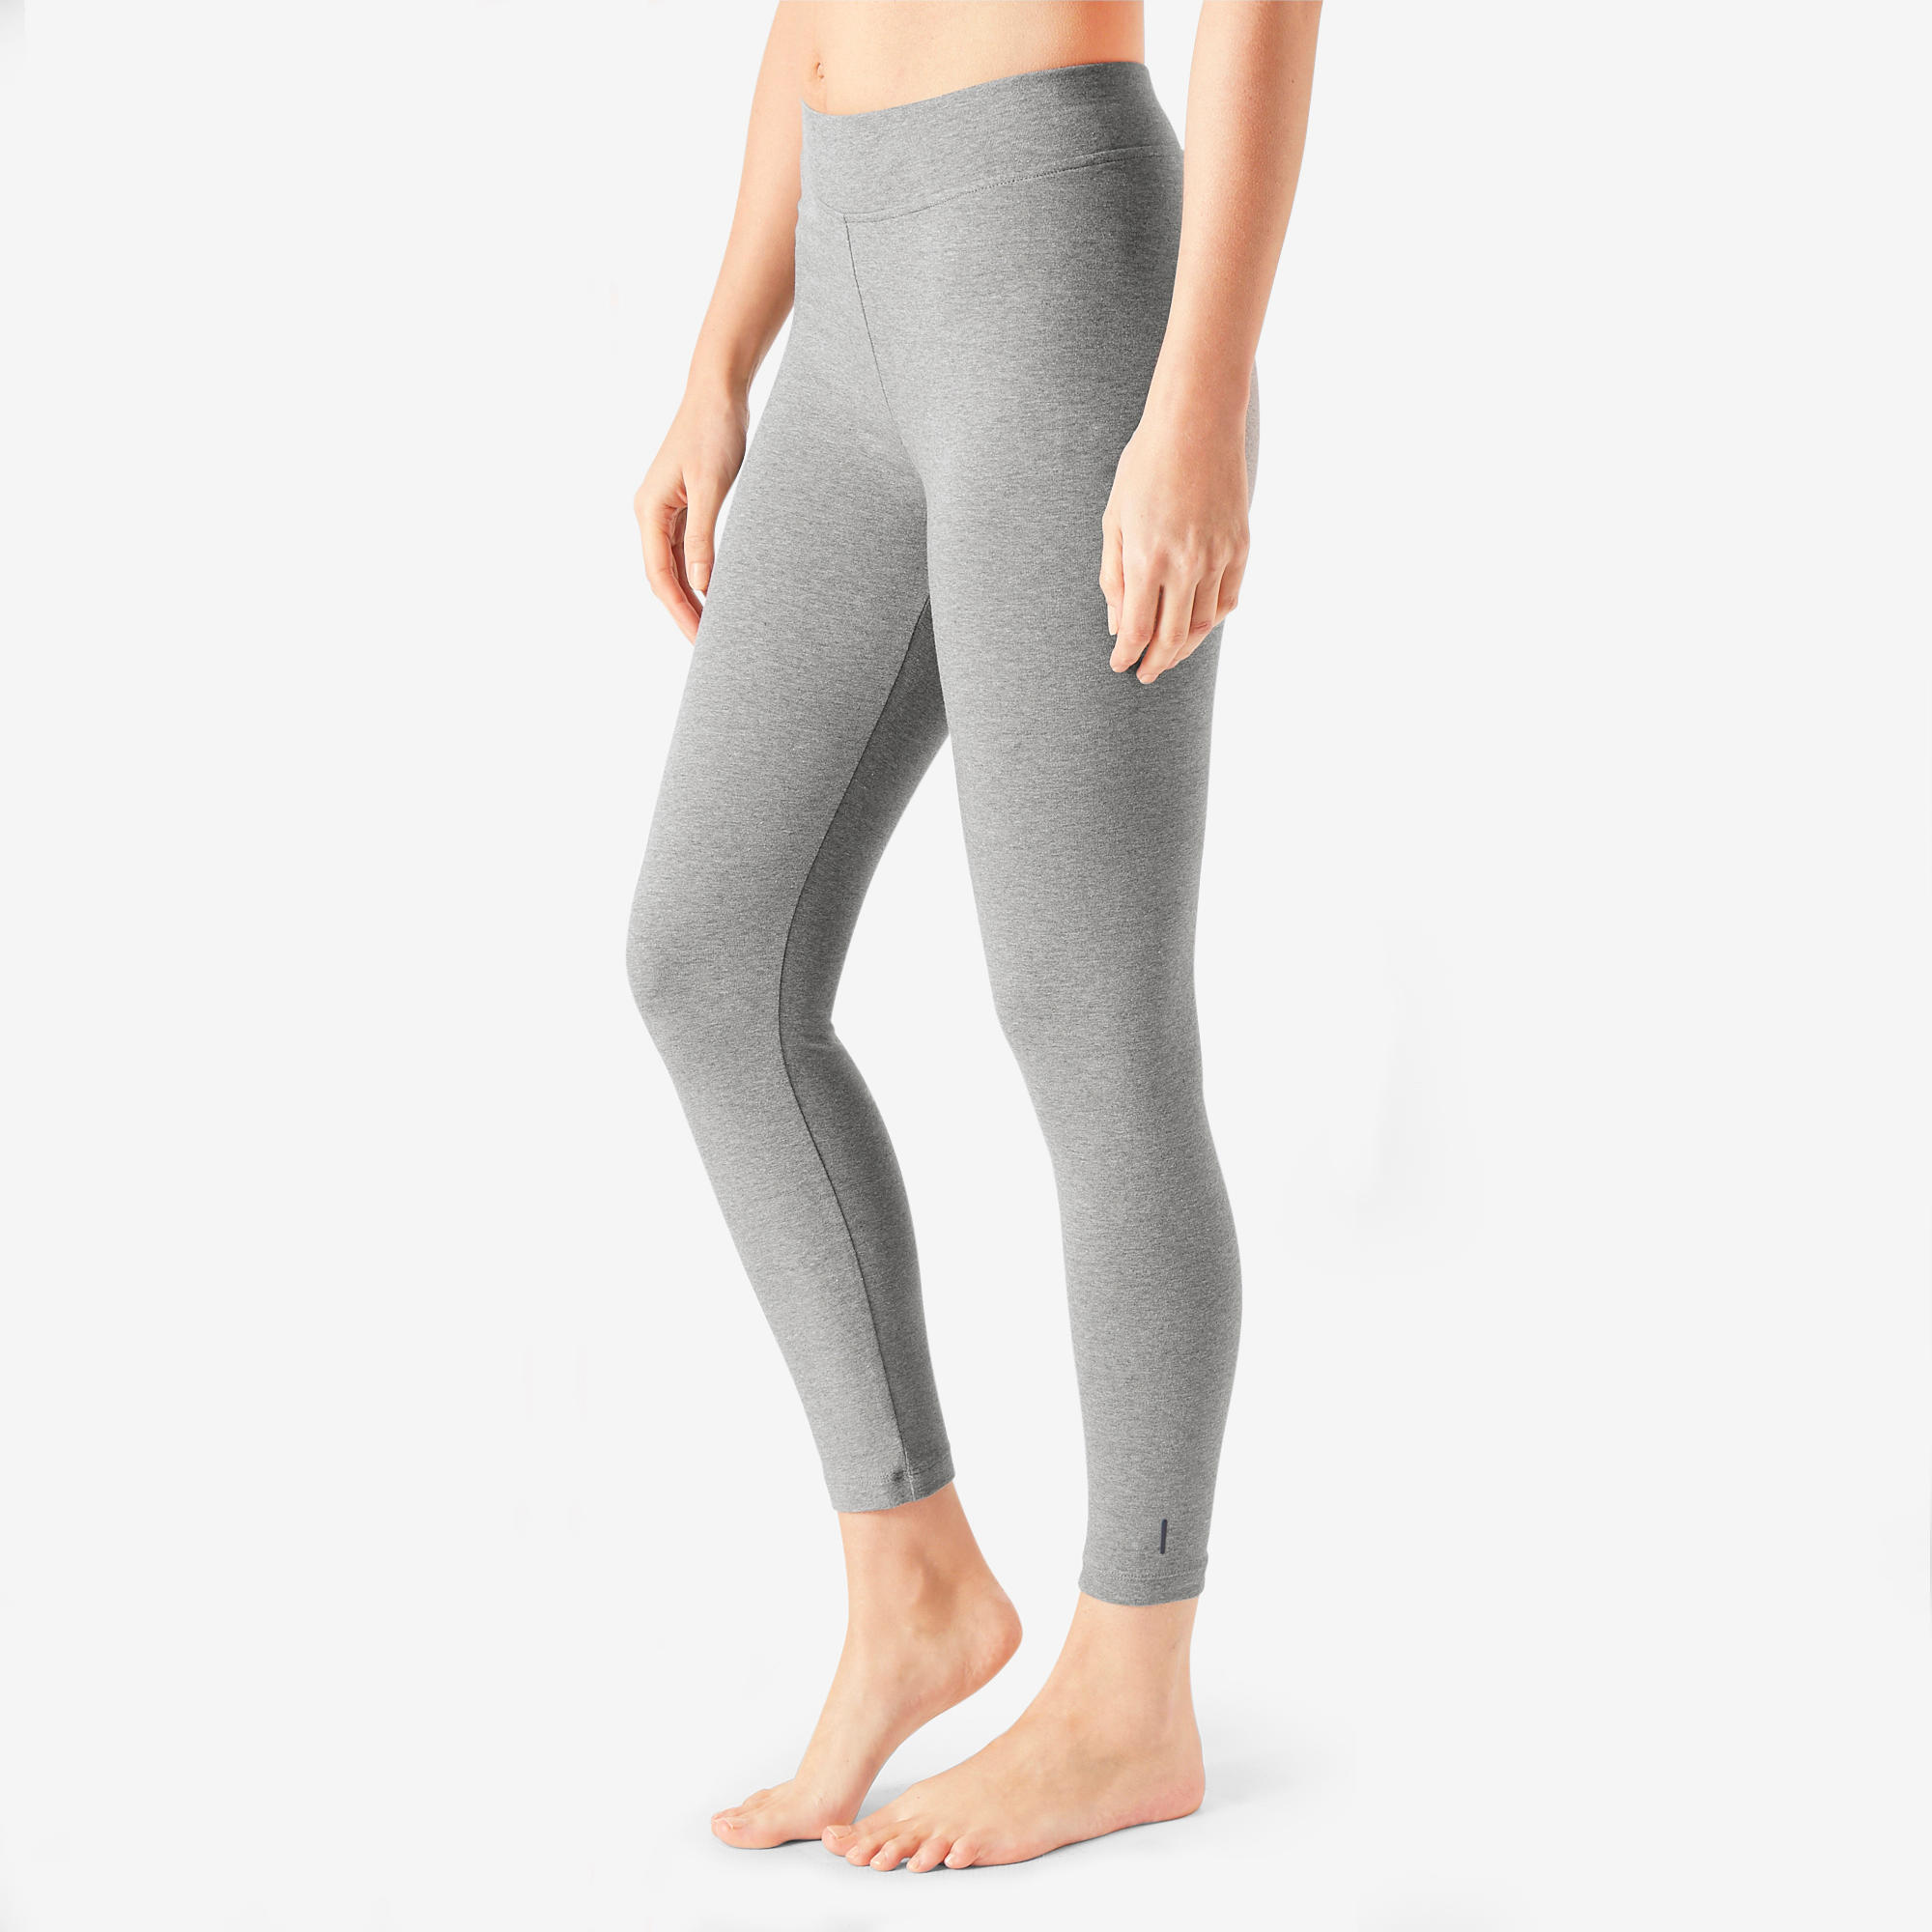 Grey Leggings For Women